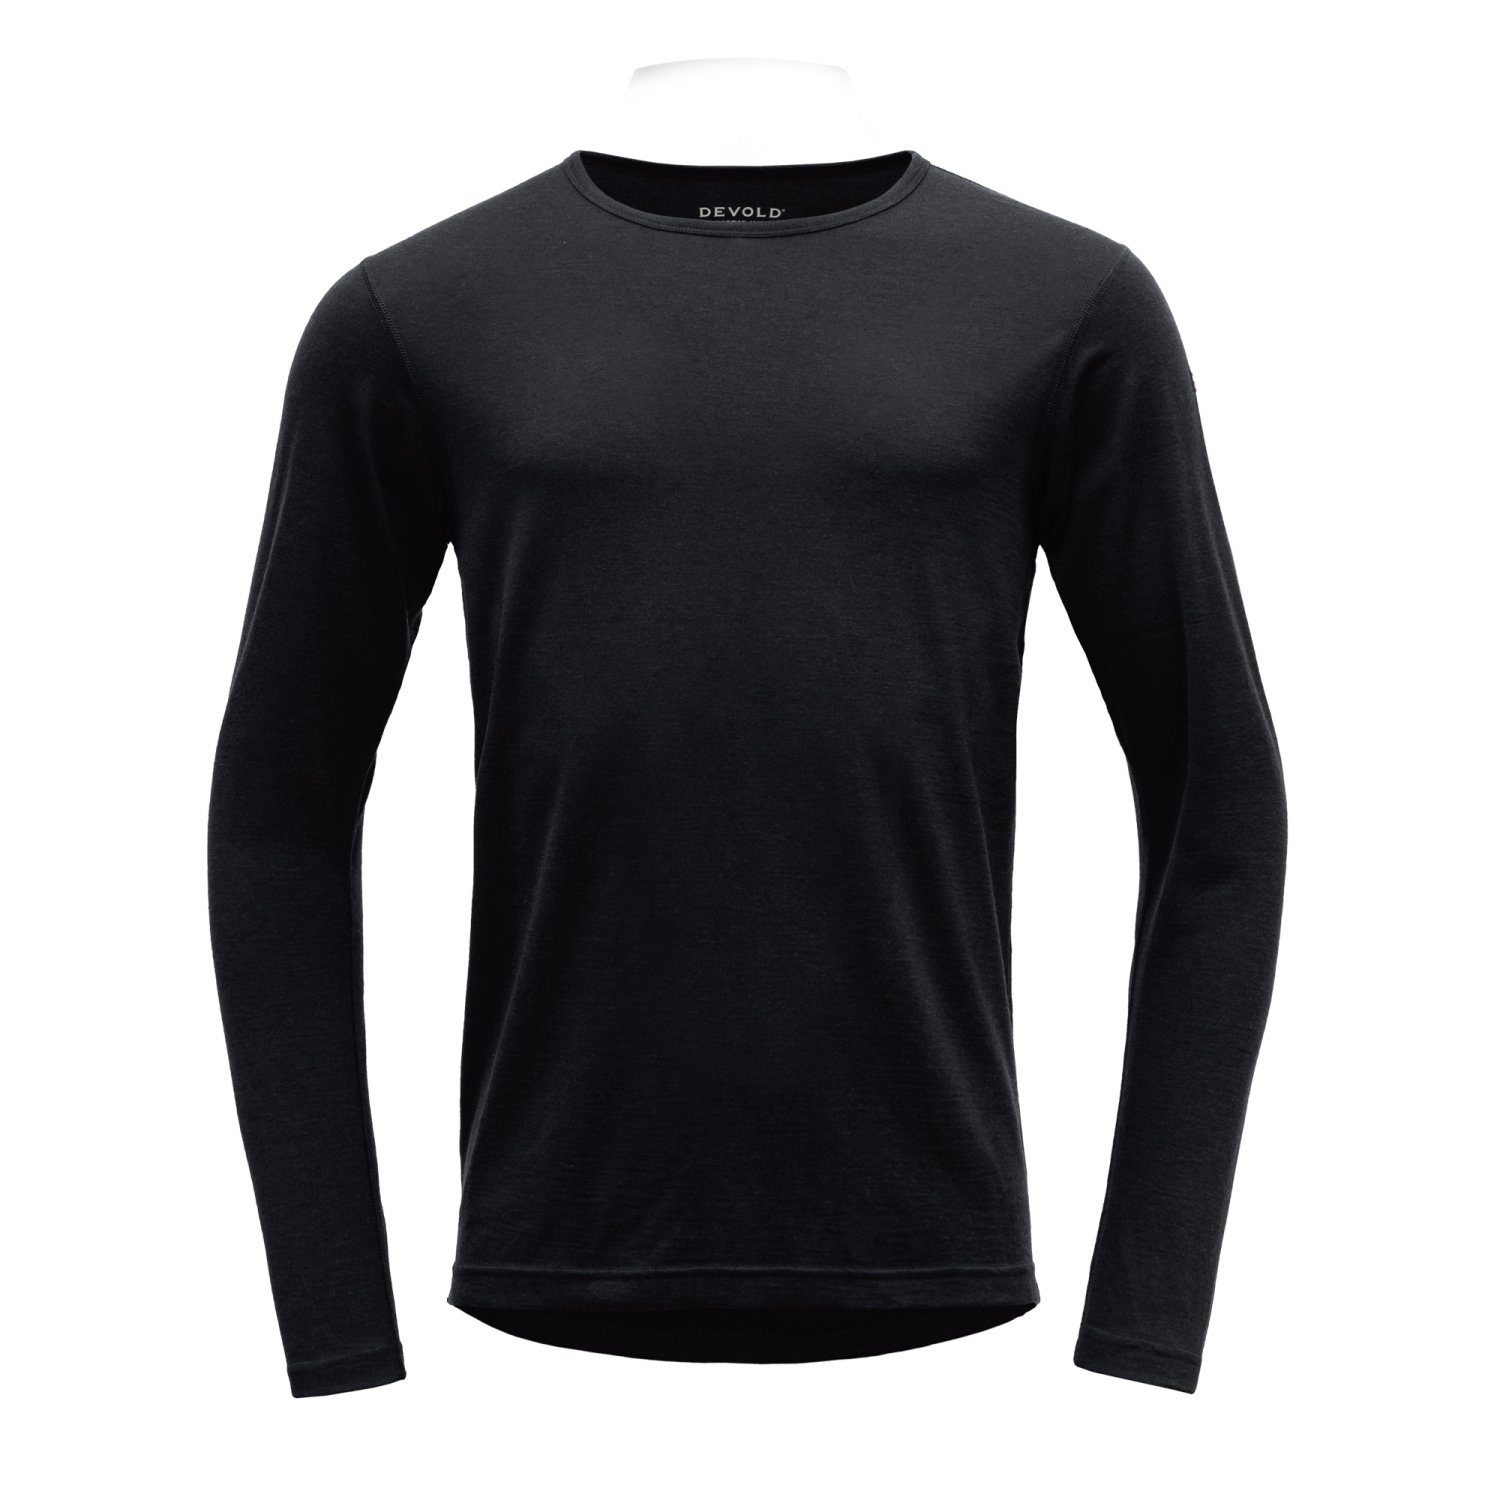 Devold Funktionsshirt Devold Herren Jakta Shirt aus Merinowolle 200g/m² Black | Funktionsshirts